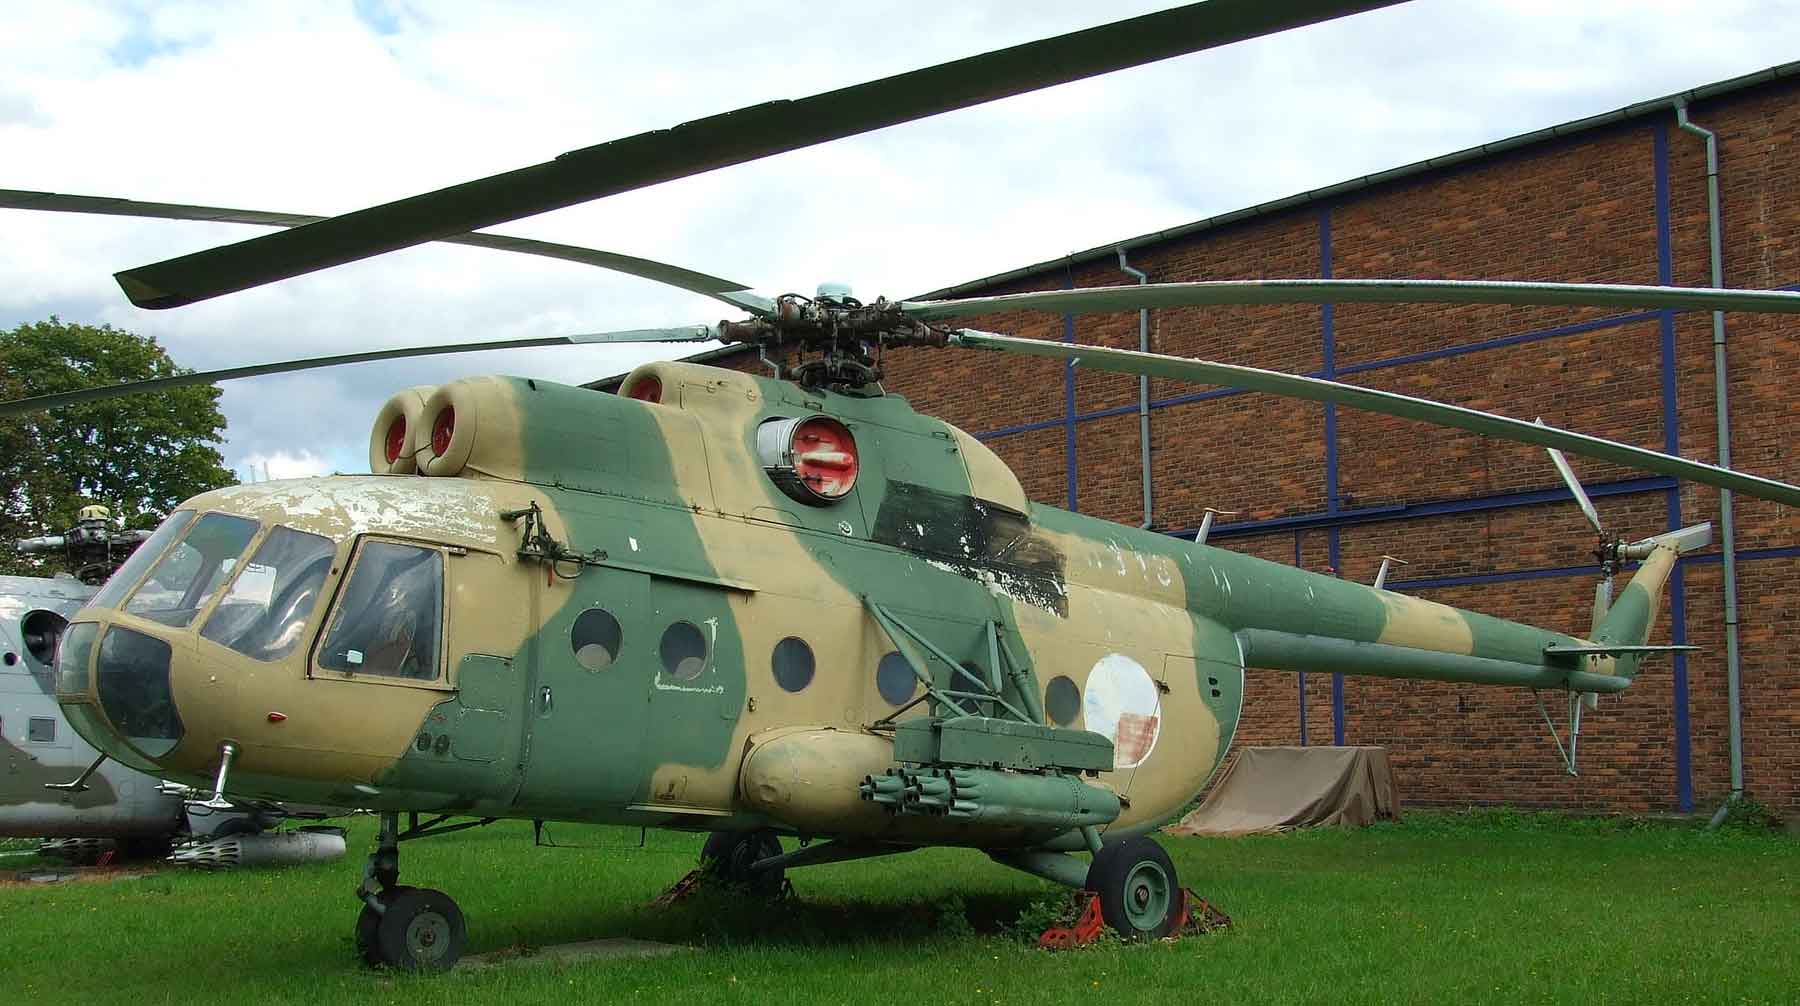 Вертолет разбился в Ровенской области Украины во время учебно-тренировочного полета Ми-8